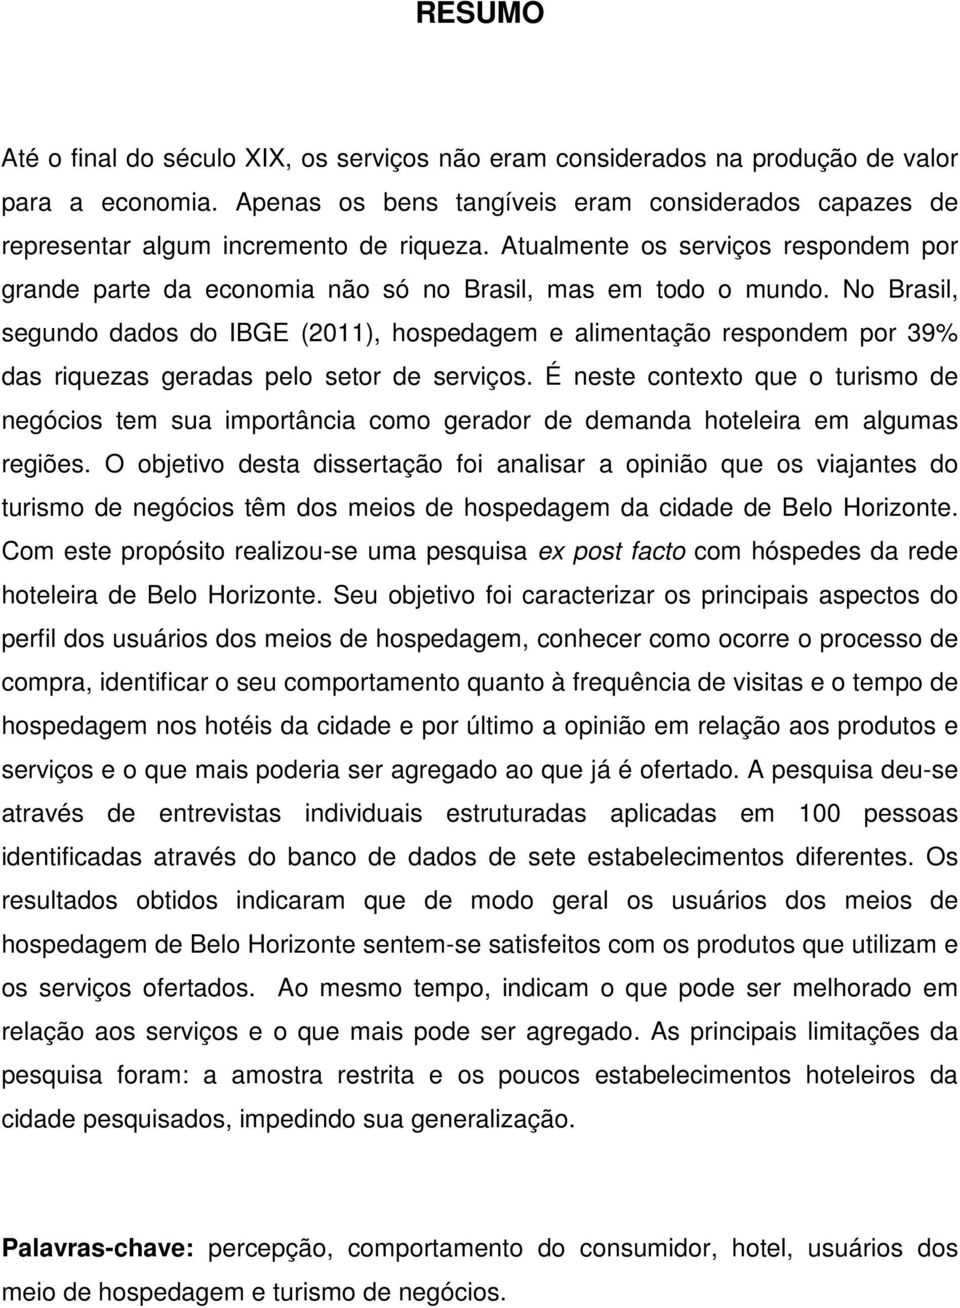 No Brasil, segundo dados do IBGE (2011), hospedagem e alimentação respondem por 39% das riquezas geradas pelo setor de serviços.